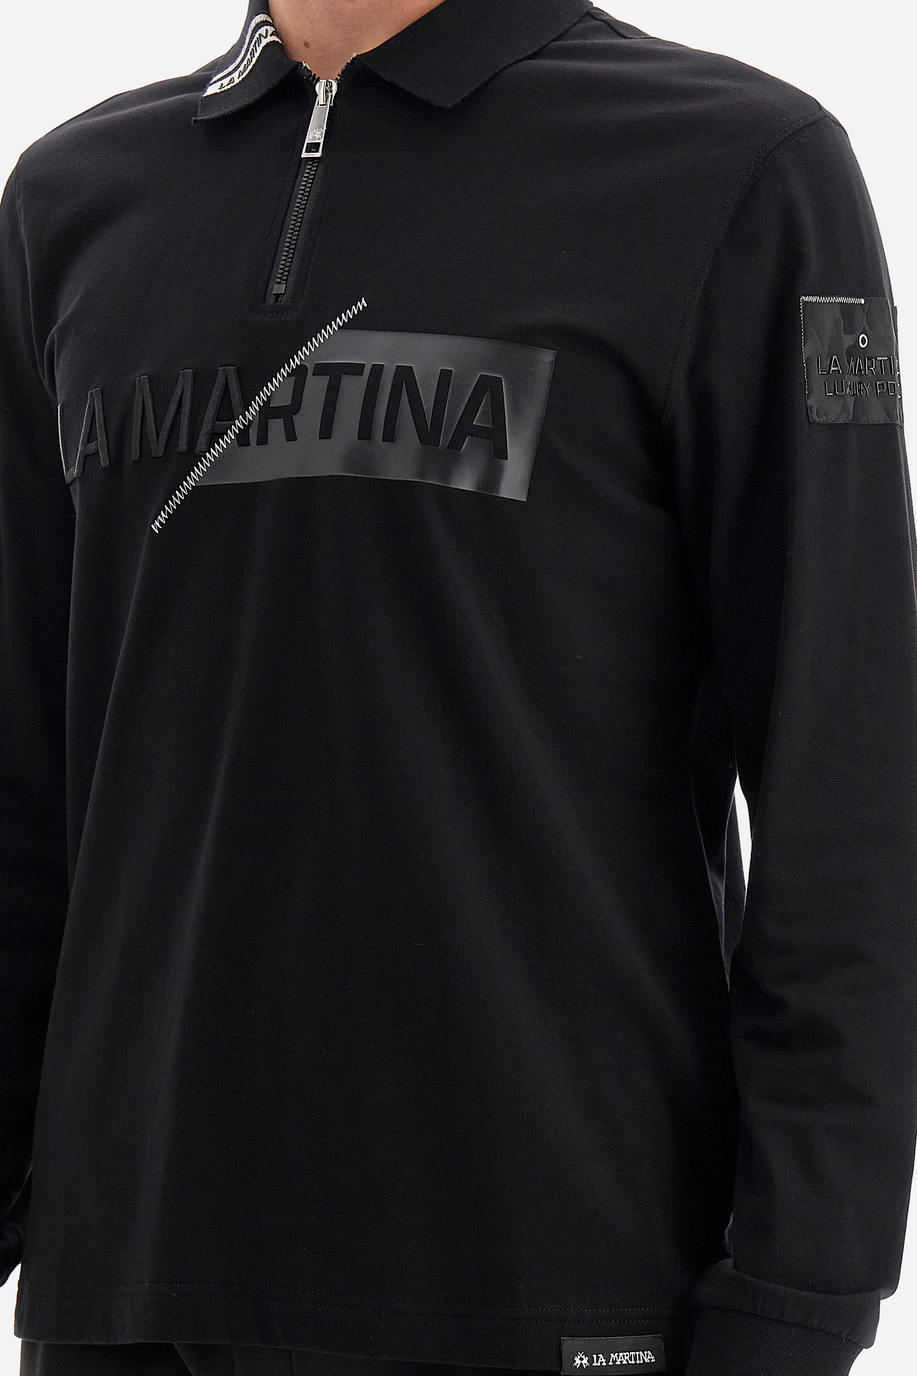 Herren -Poloshirt regular fit - Warrick - Jet Set | La Martina - Official Online Shop